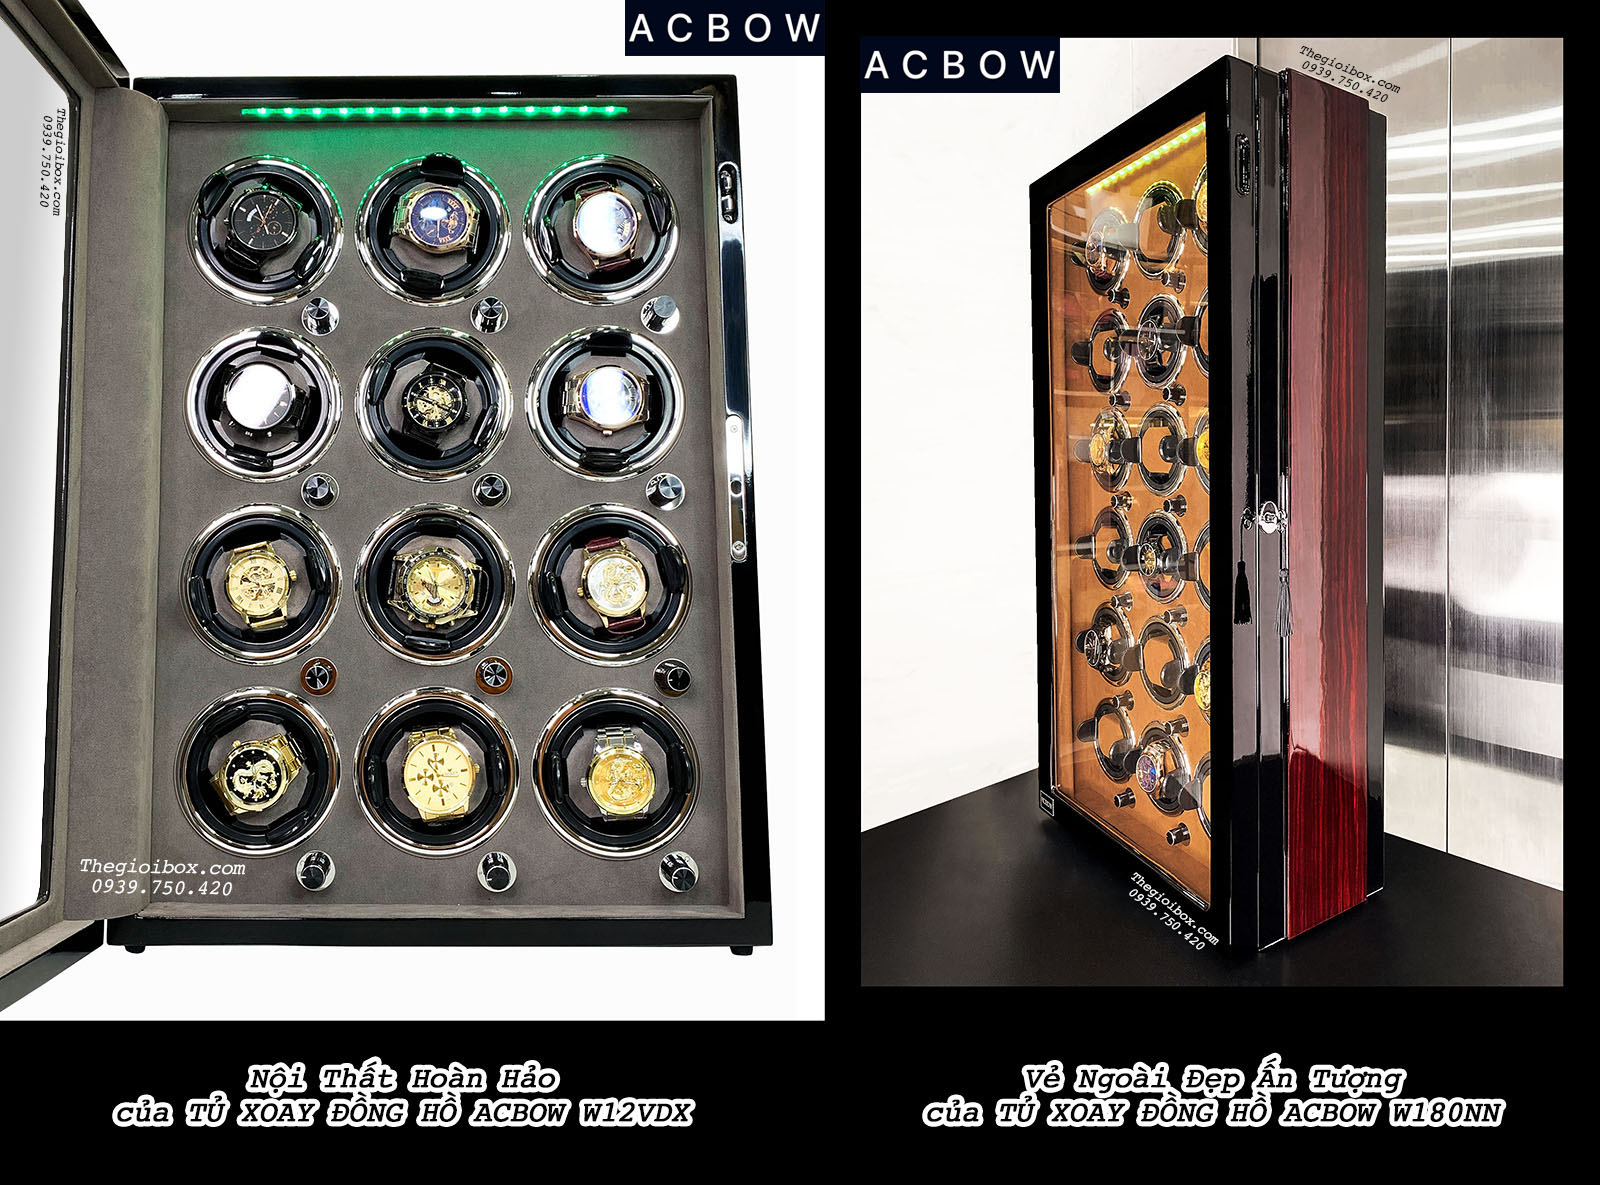 Tủ xoay đồng hồ cơ ACBOW cỡ lớn - Review Tủ xoay đồng hồ ACBOW độ bền vĩnh viễn